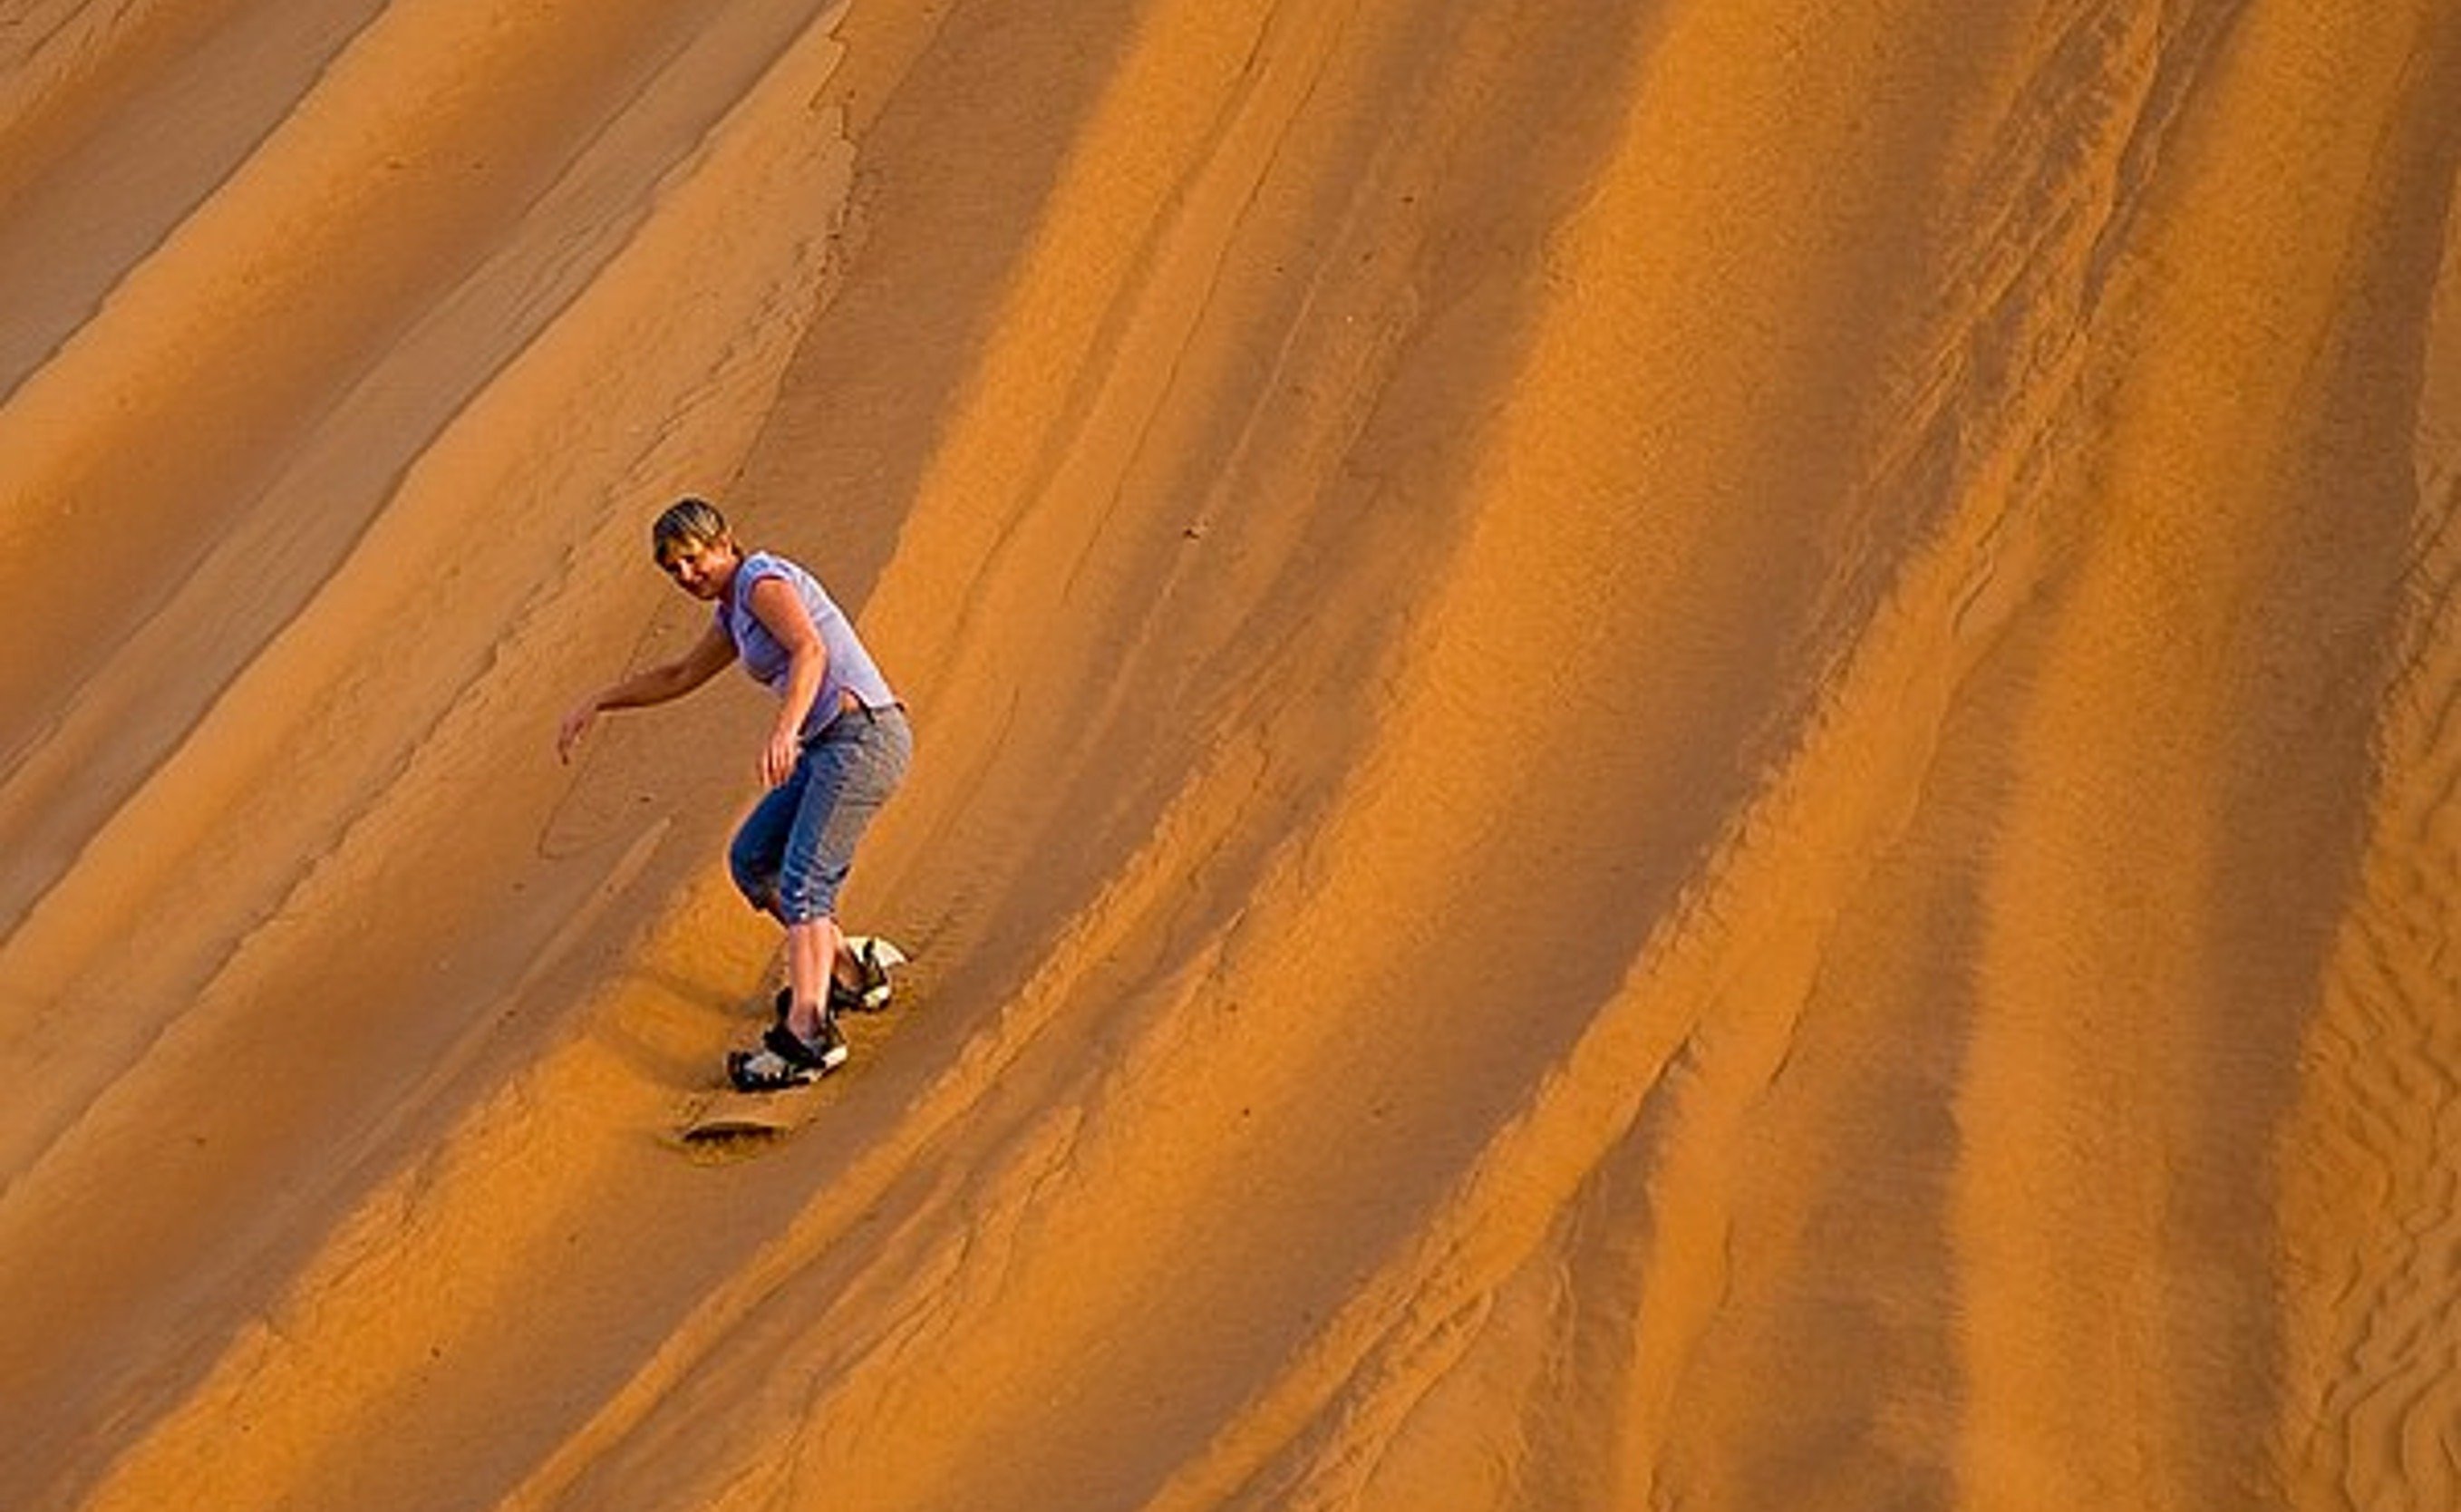 التزلج على الرمال في رمال وهيبة, سلطنة عمان.